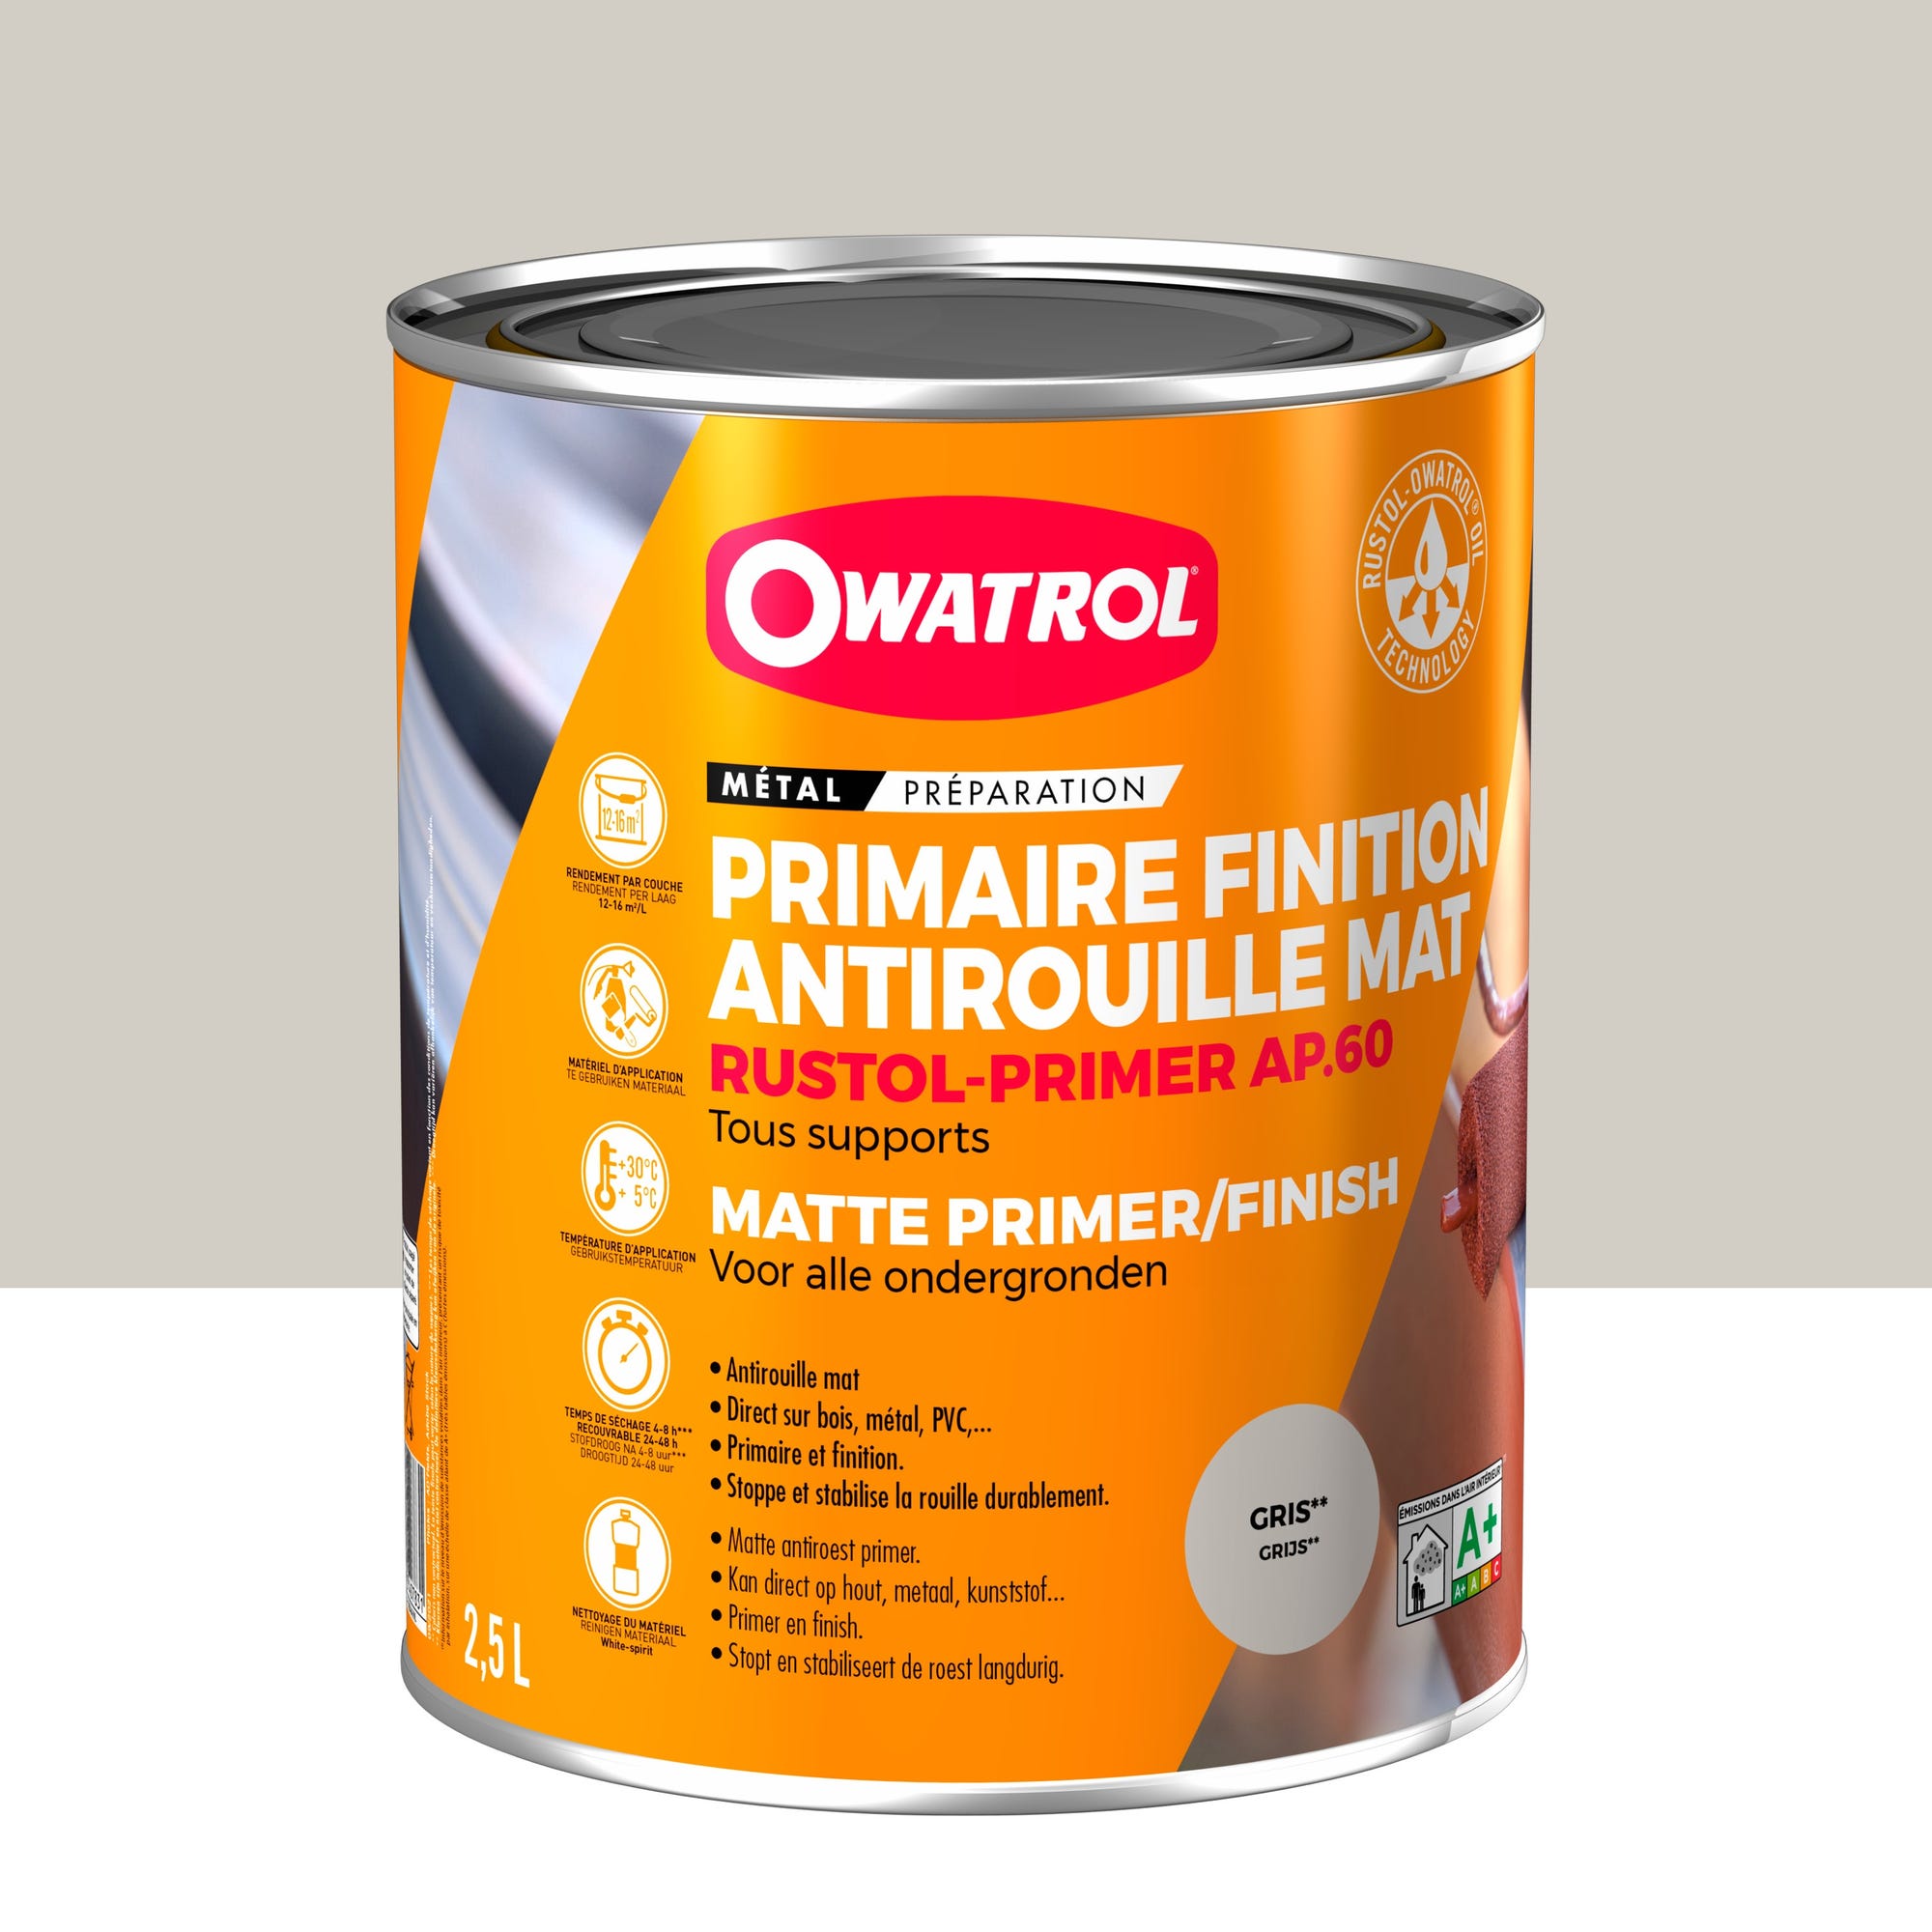 Primaire et finition mat antirouille Owatrol RUSTOL PRIMER AP 60 Gris (ow16) 2.5 litres 0